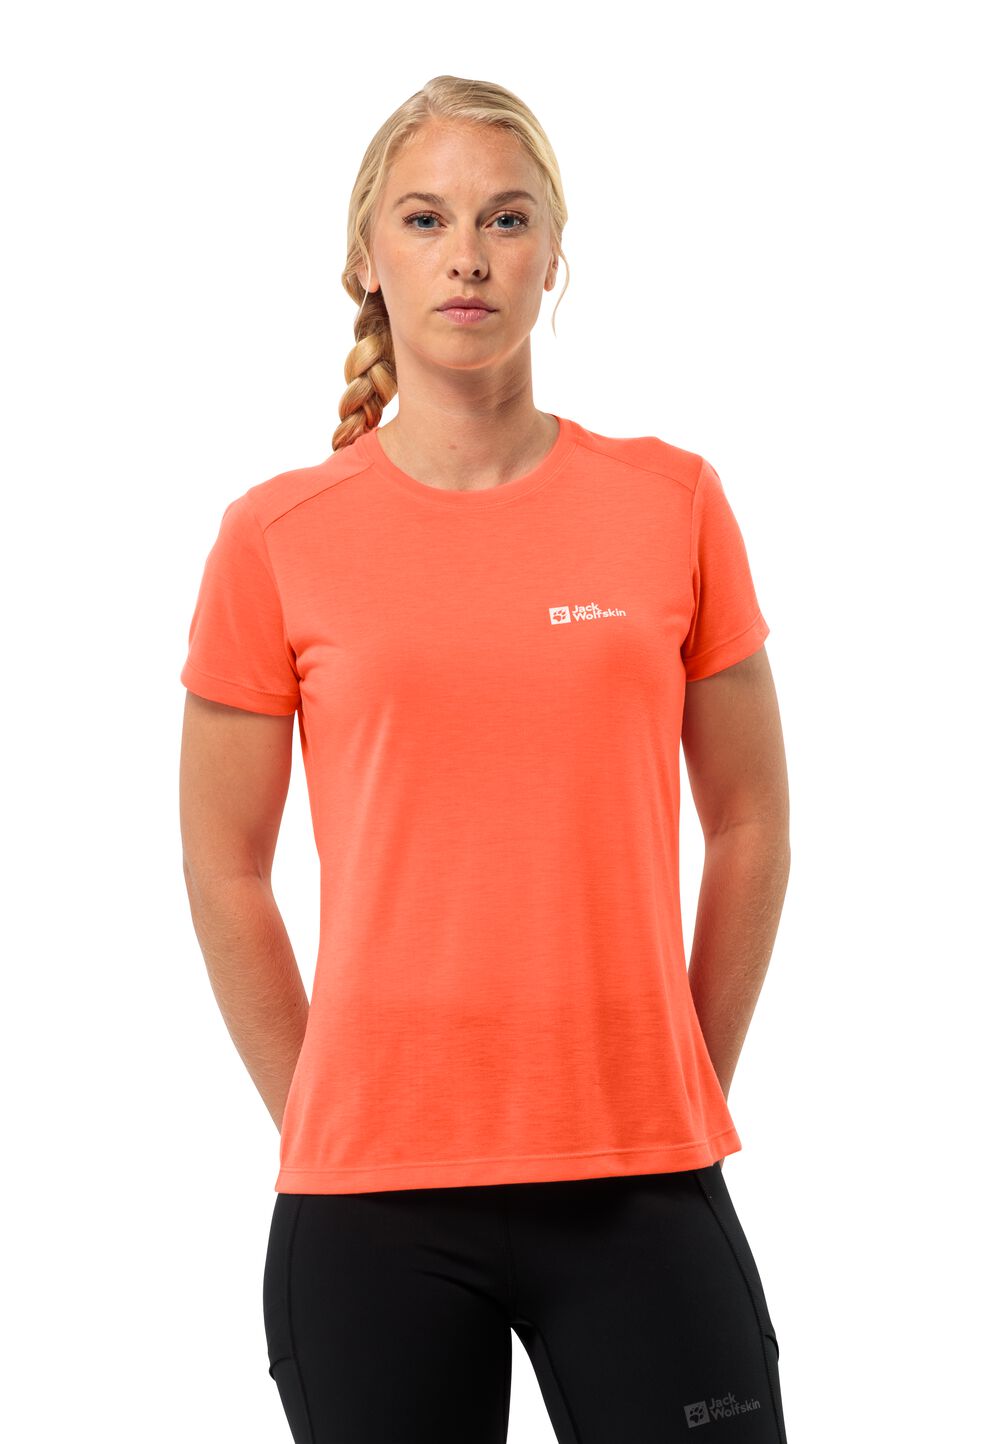 Jack Wolfskin Vonnan S S T-Shirt Women Functioneel shirt Dames L rood digital orange